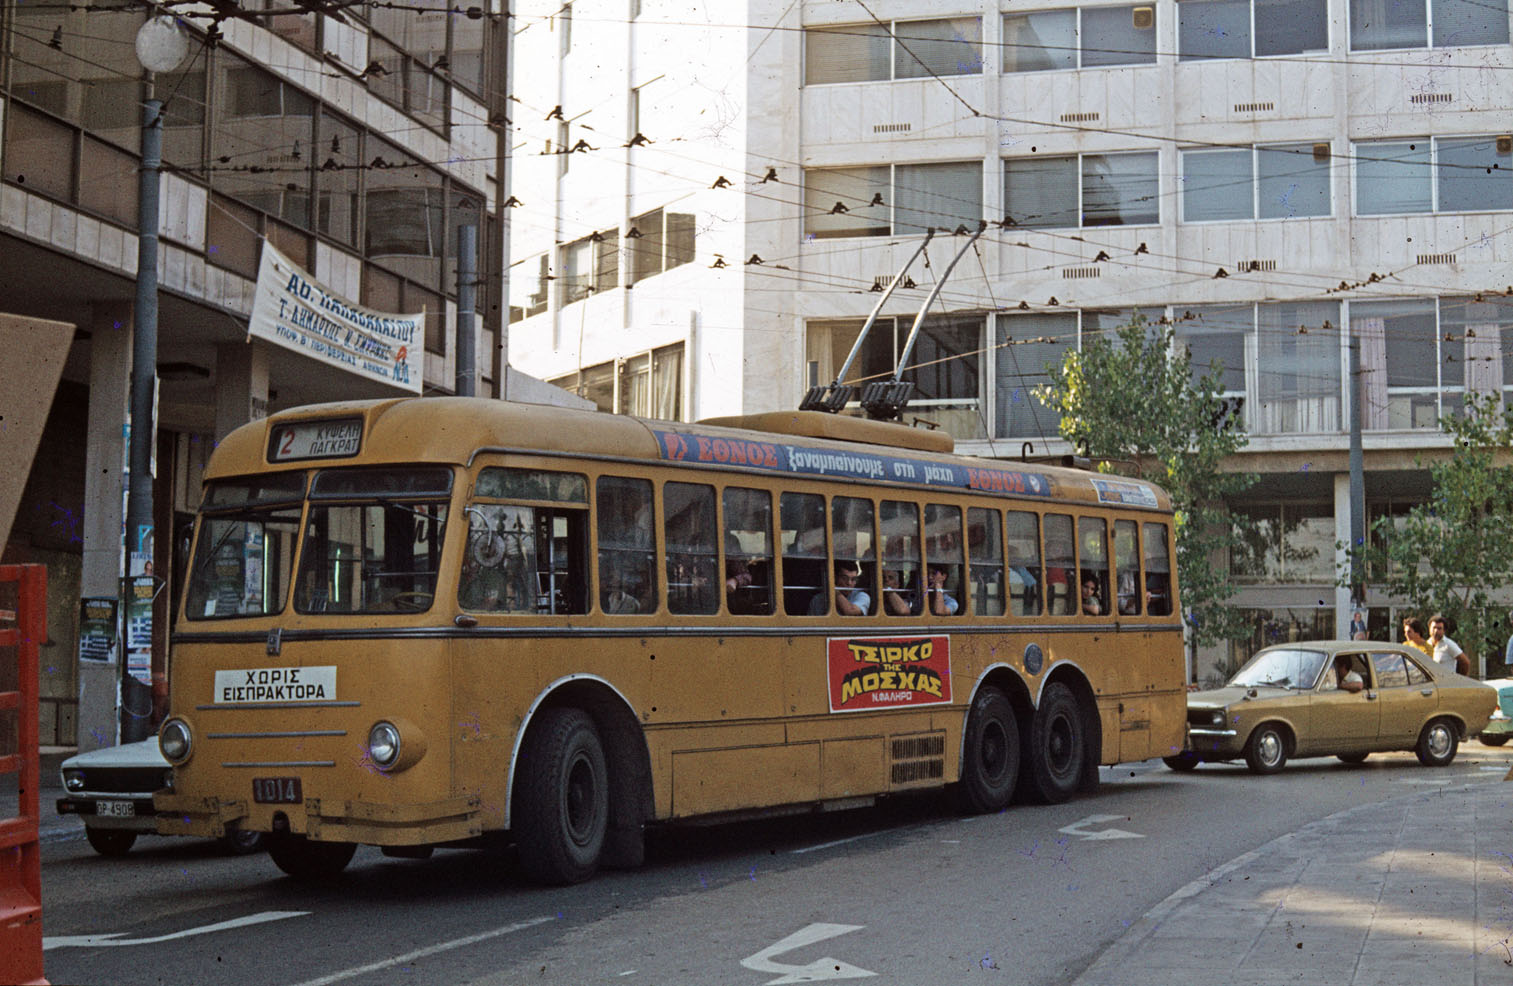 Athènes, Alfa Romeo 140 AF Casaro/CGE N°. 1014; Athènes — Trolleybuses — old photos